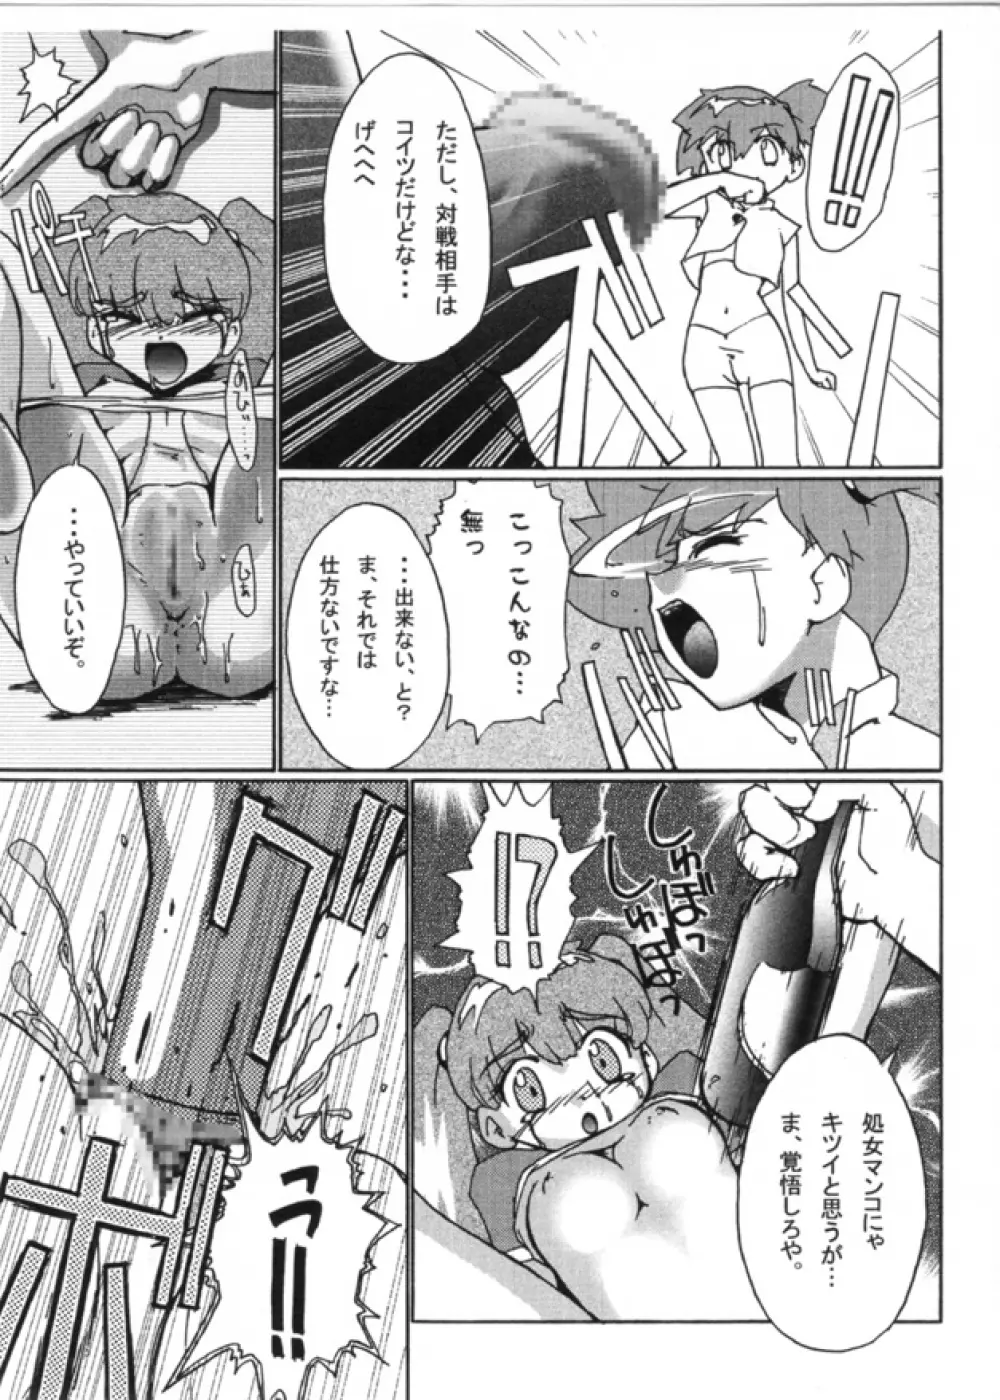 KASUMIX XPLOSION Kasumi Comic part5 42ページ